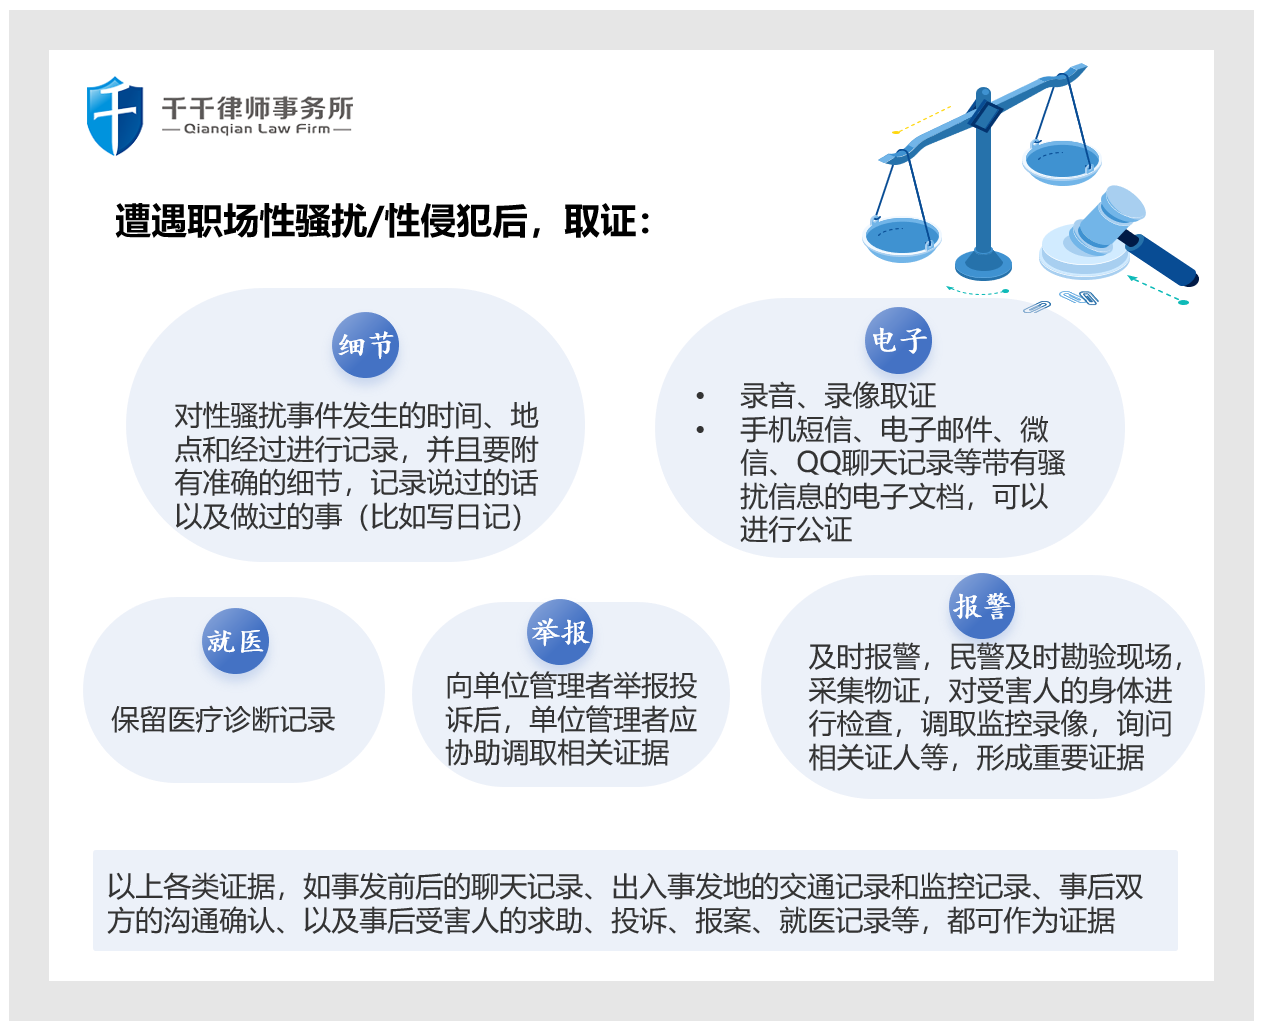 图片来源：微信公众号“北京市千千律师事务所”